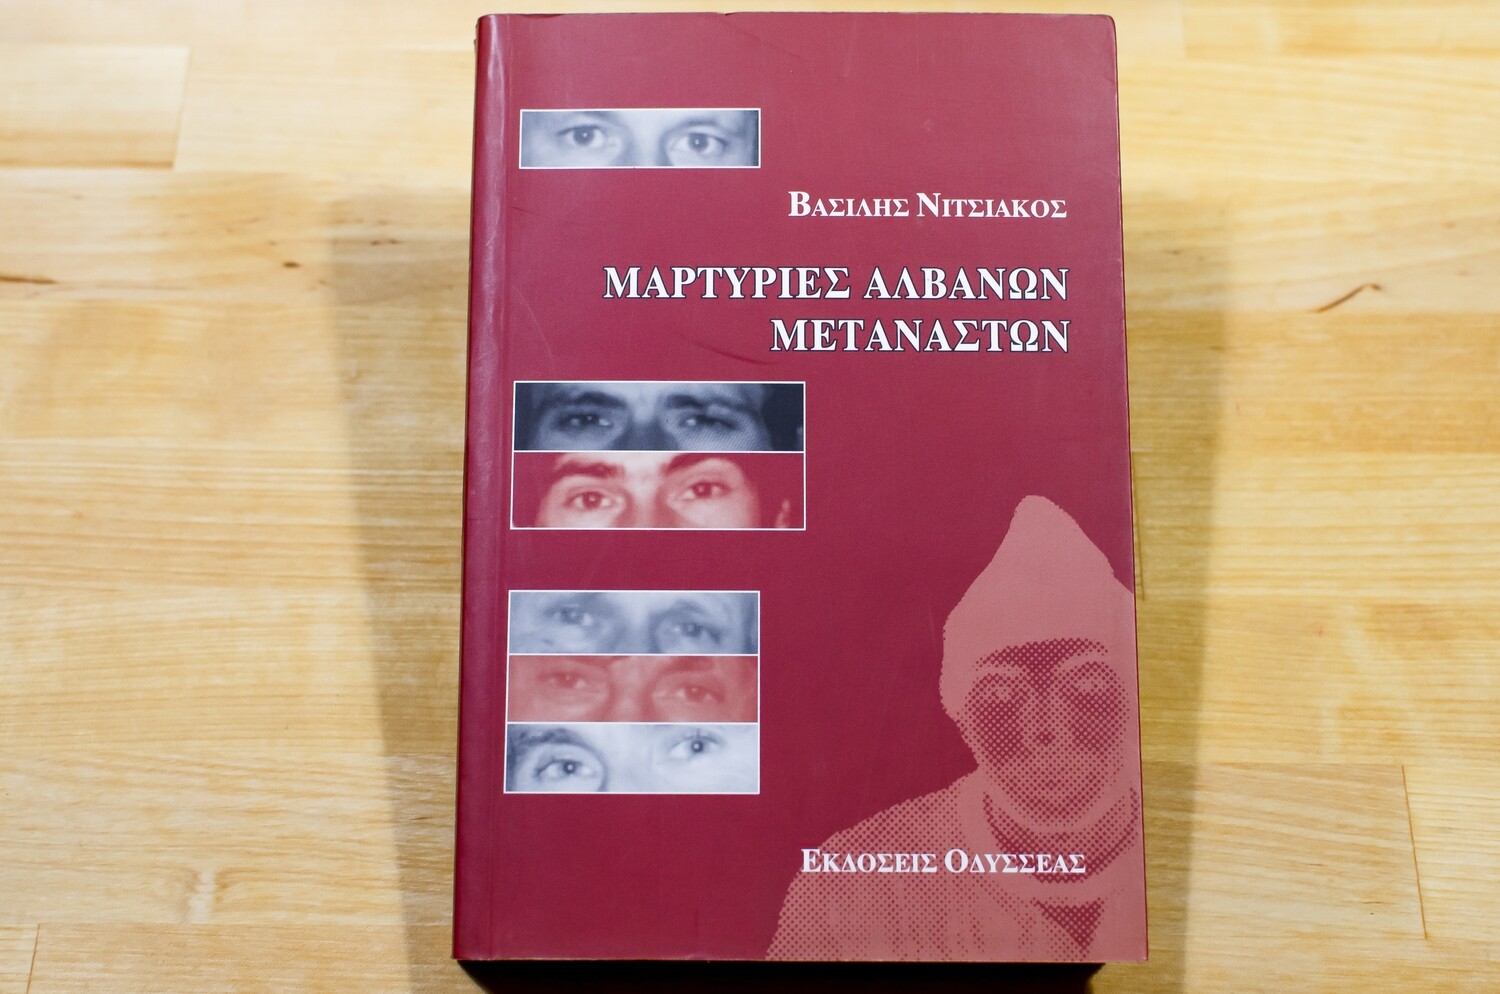 Μαρτυρίες Αλβανών μεταναστών, Βασίλης Νιτσιάκος, Εκδόσεις Οδυσσέας, 2003